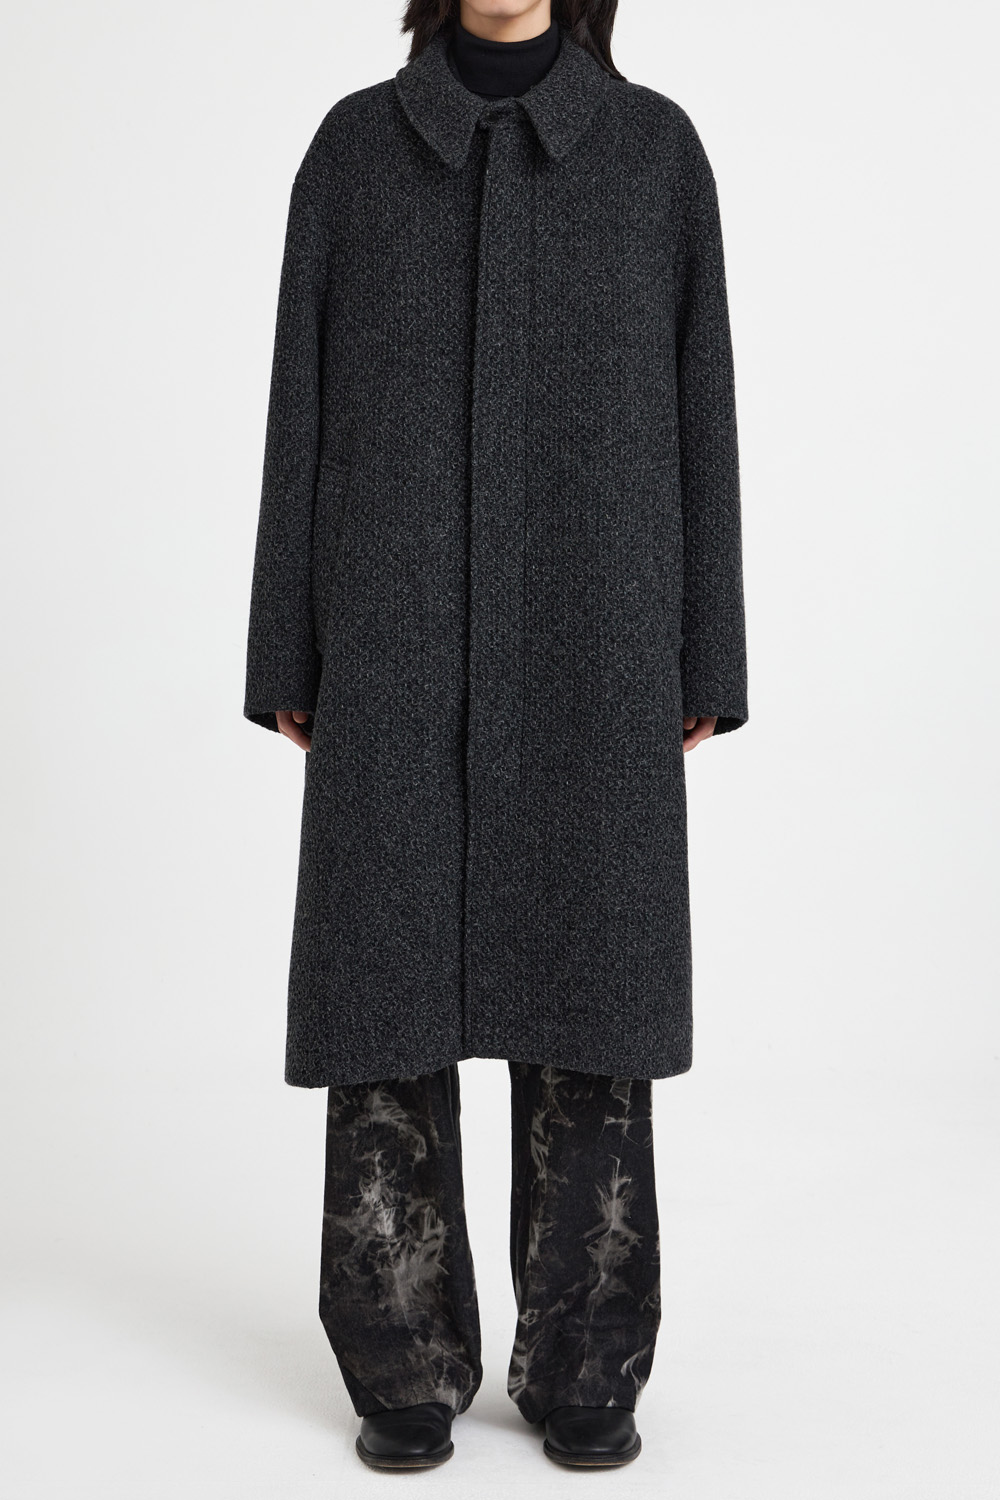 Balmacaan Coat - Charcoal Tweed